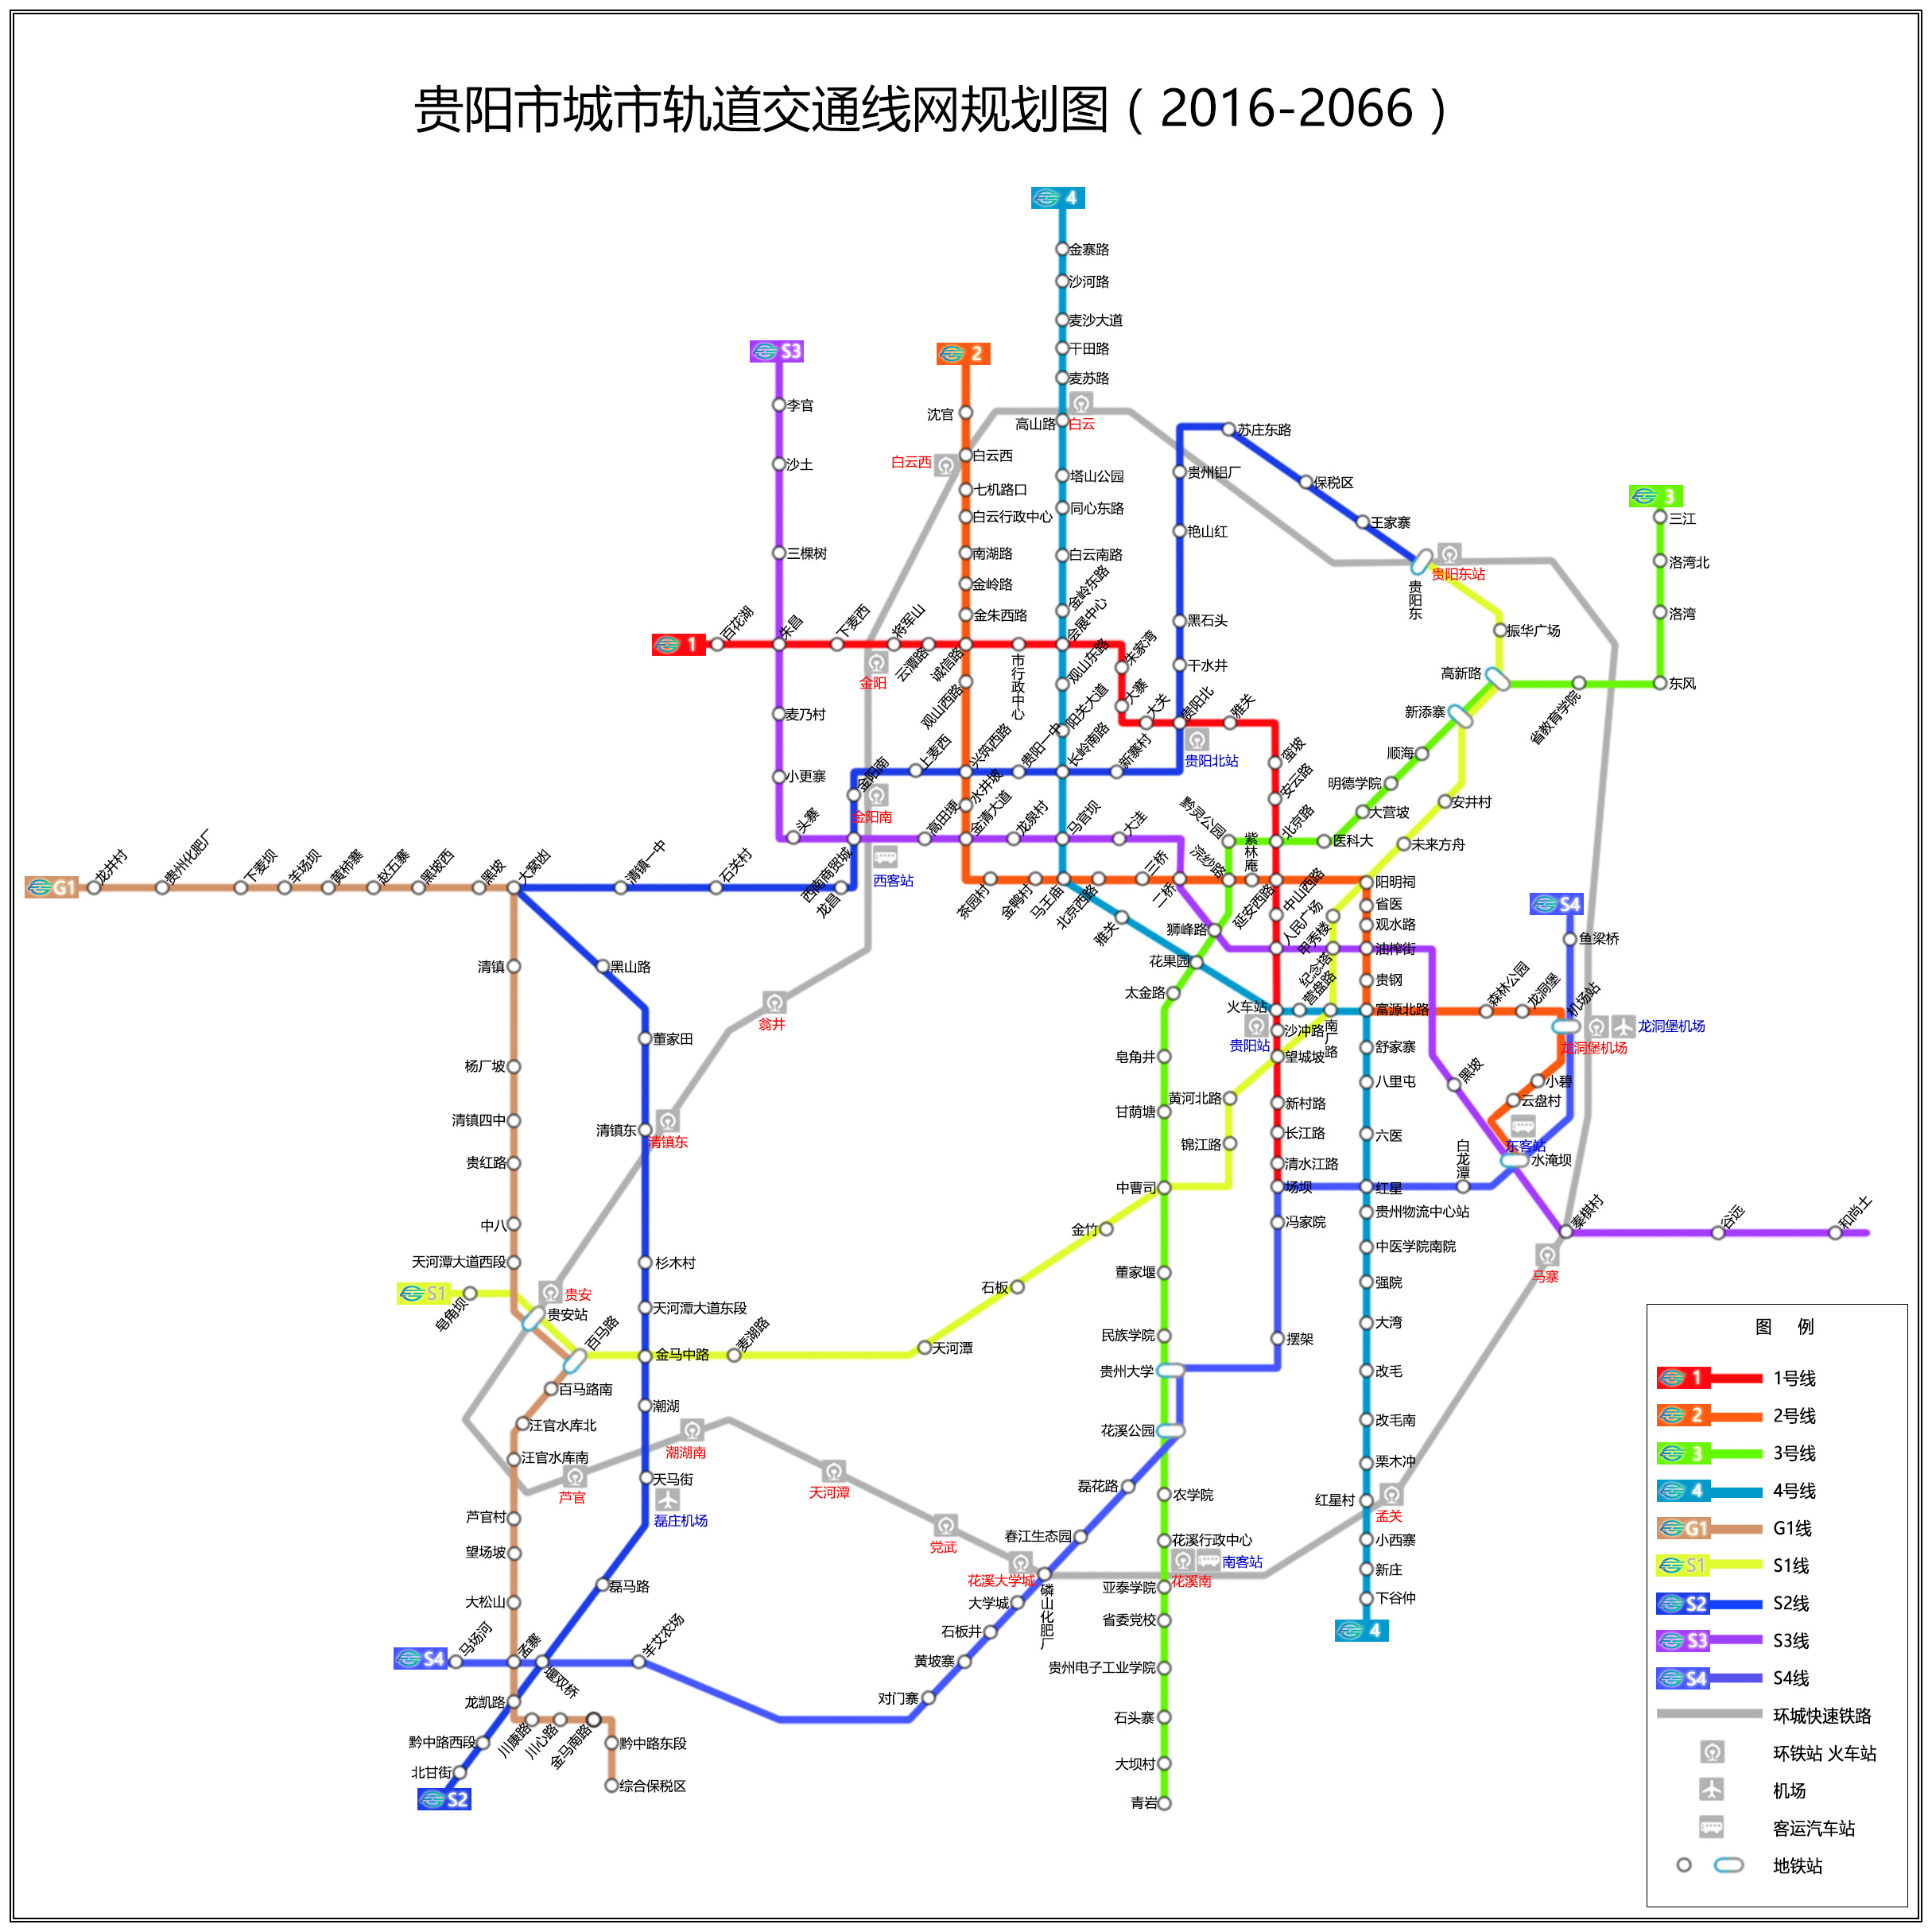 贵州大环线自驾行程及三段路线图实用攻略分享 - 马蜂窝